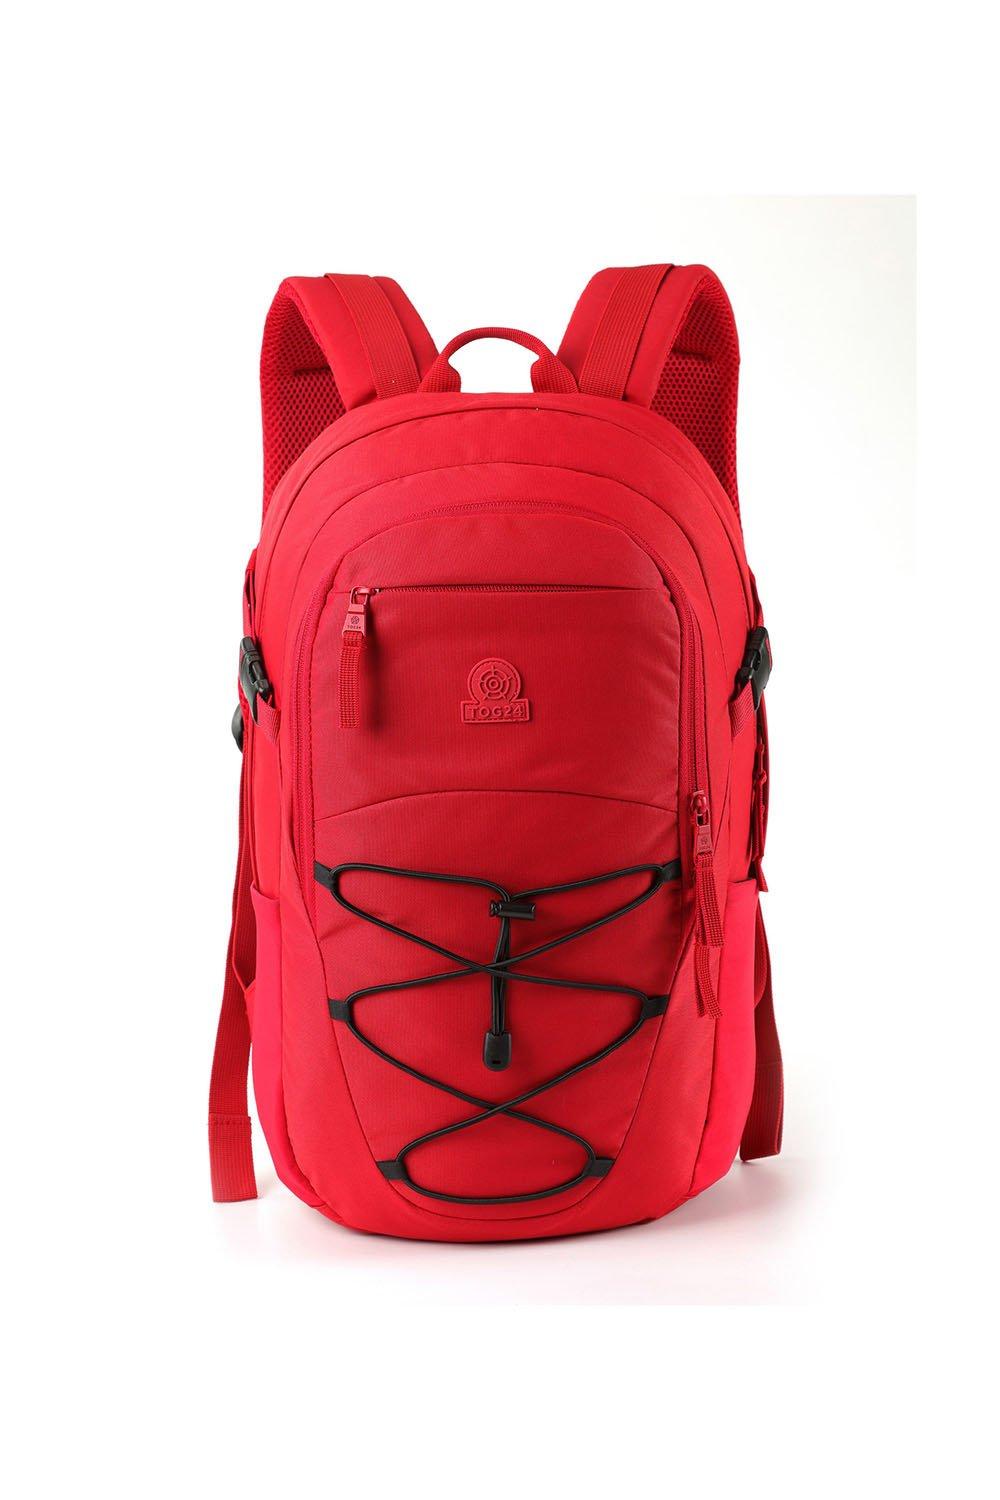 Рюкзак Доэрти 20л TOG24, красный рюкзак сумка трансформер legenda asbolute training bag black red